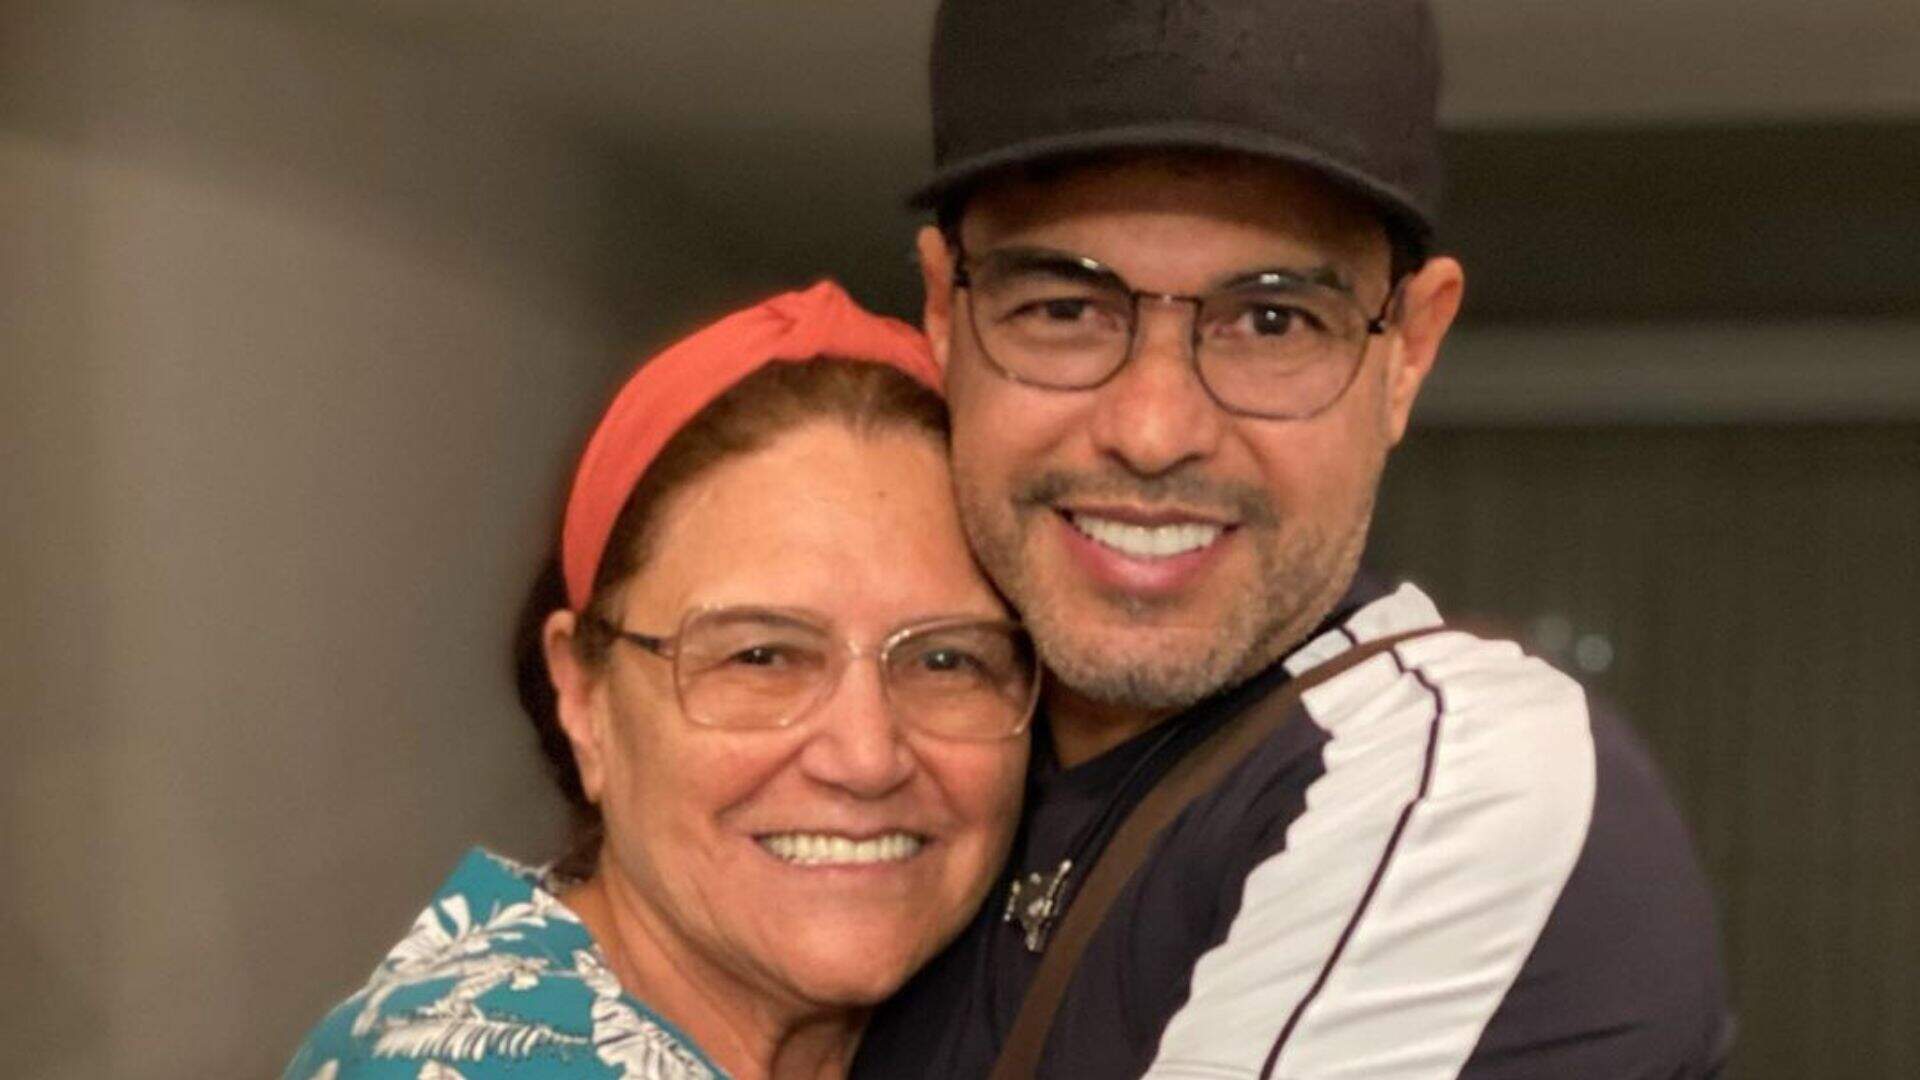 Zezé di Camargo deixa mensagem especial de aniversário para sua mãe: “Minha rainha” - Metropolitana FM